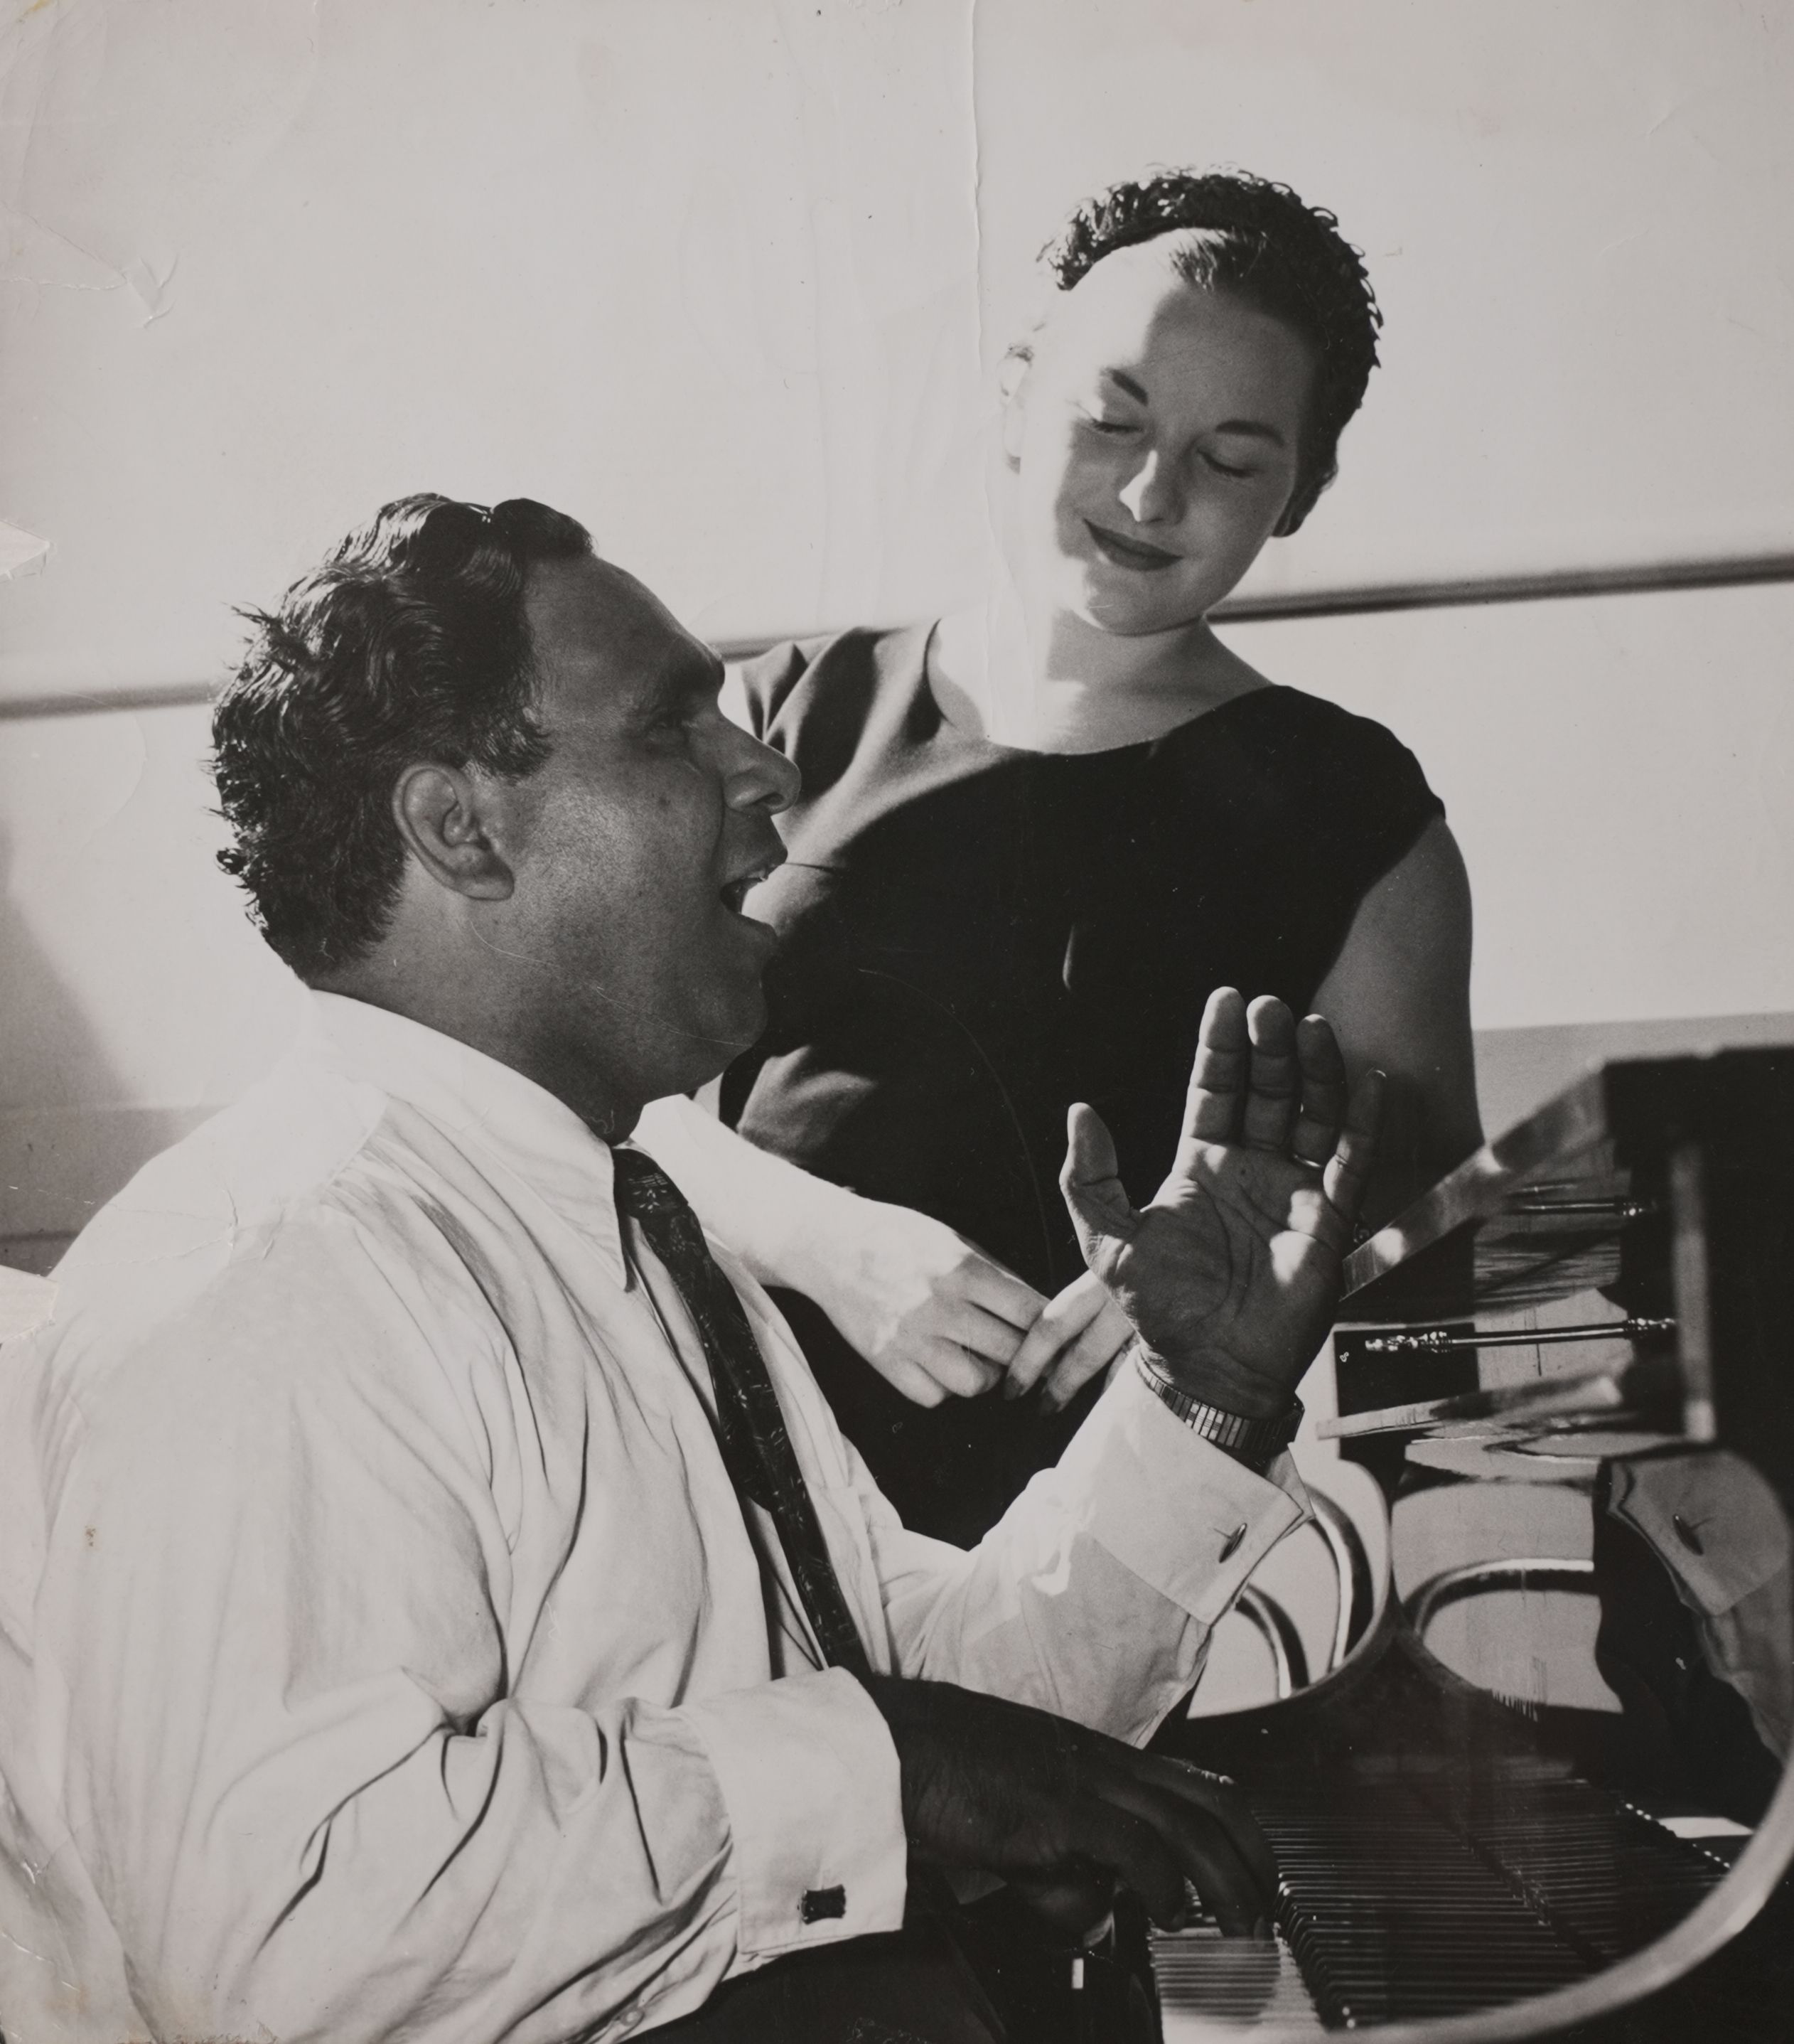 Harold Blair teaching a student at a piano